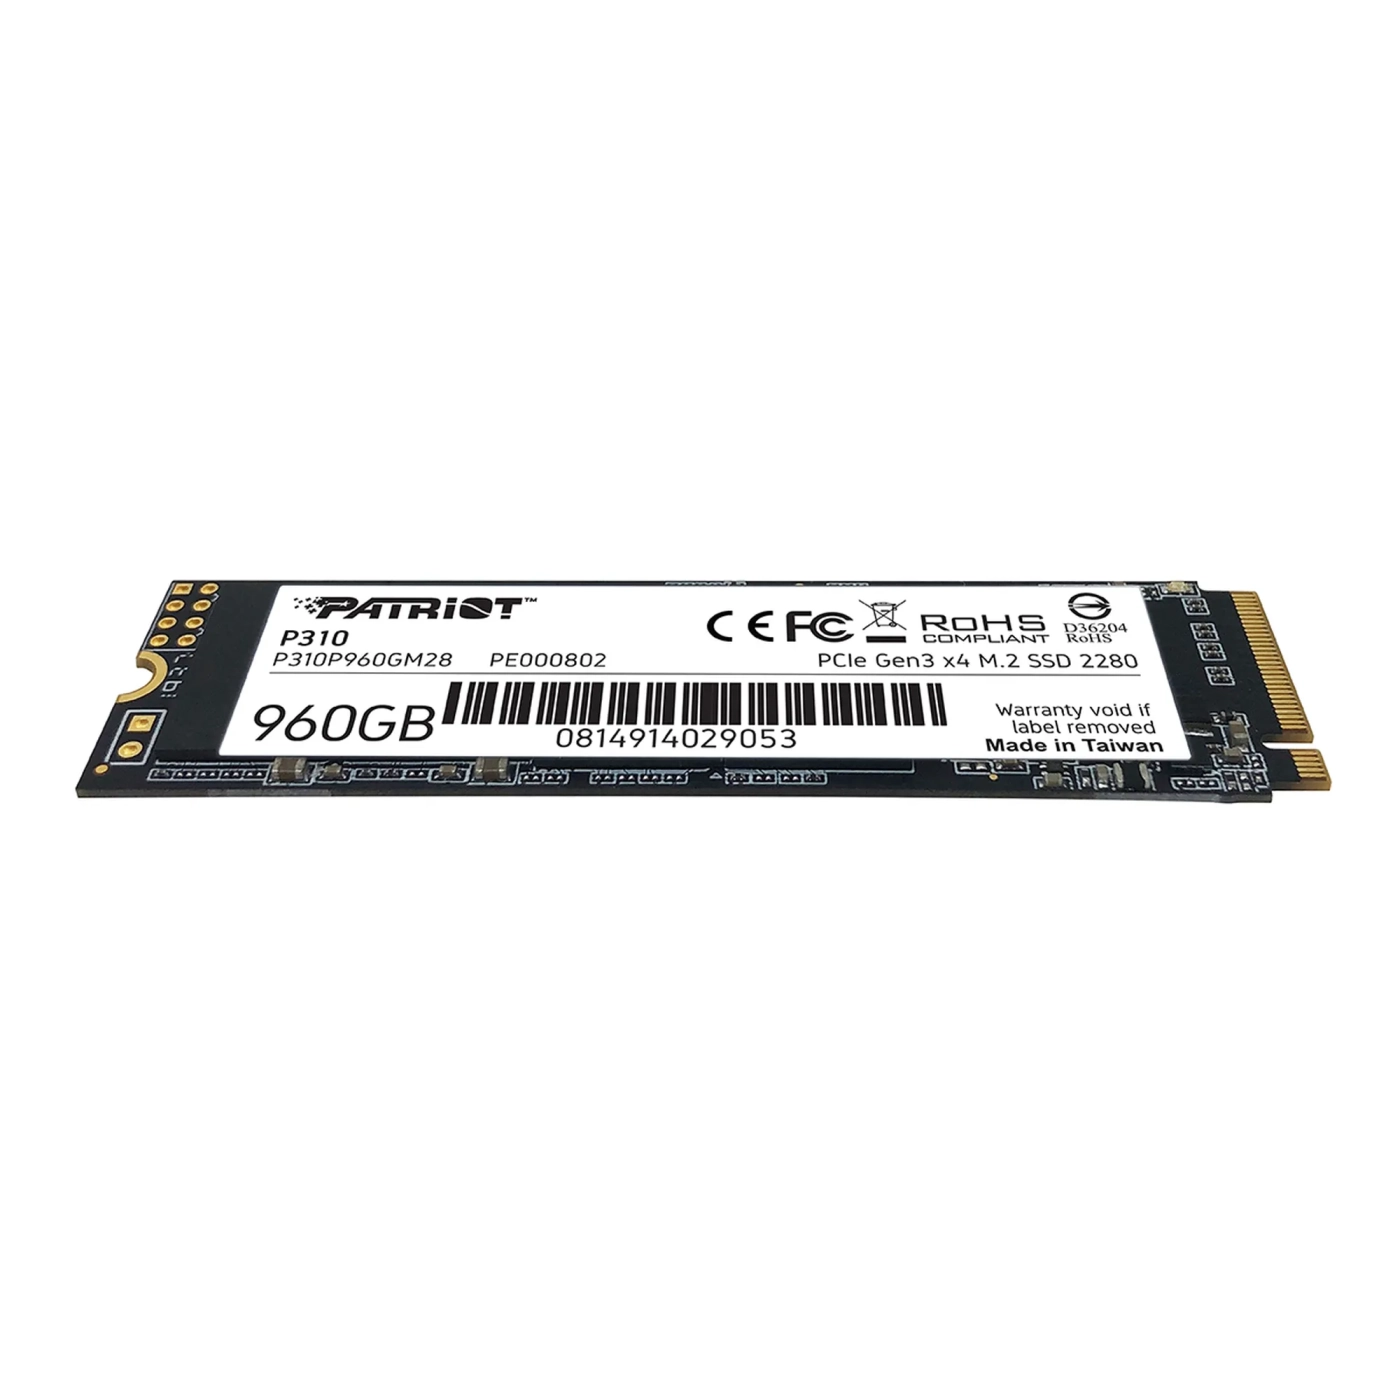 Купити SSD диск Patriot P310 960GB M.2 NVMe (P310P960GM28) - фото 3